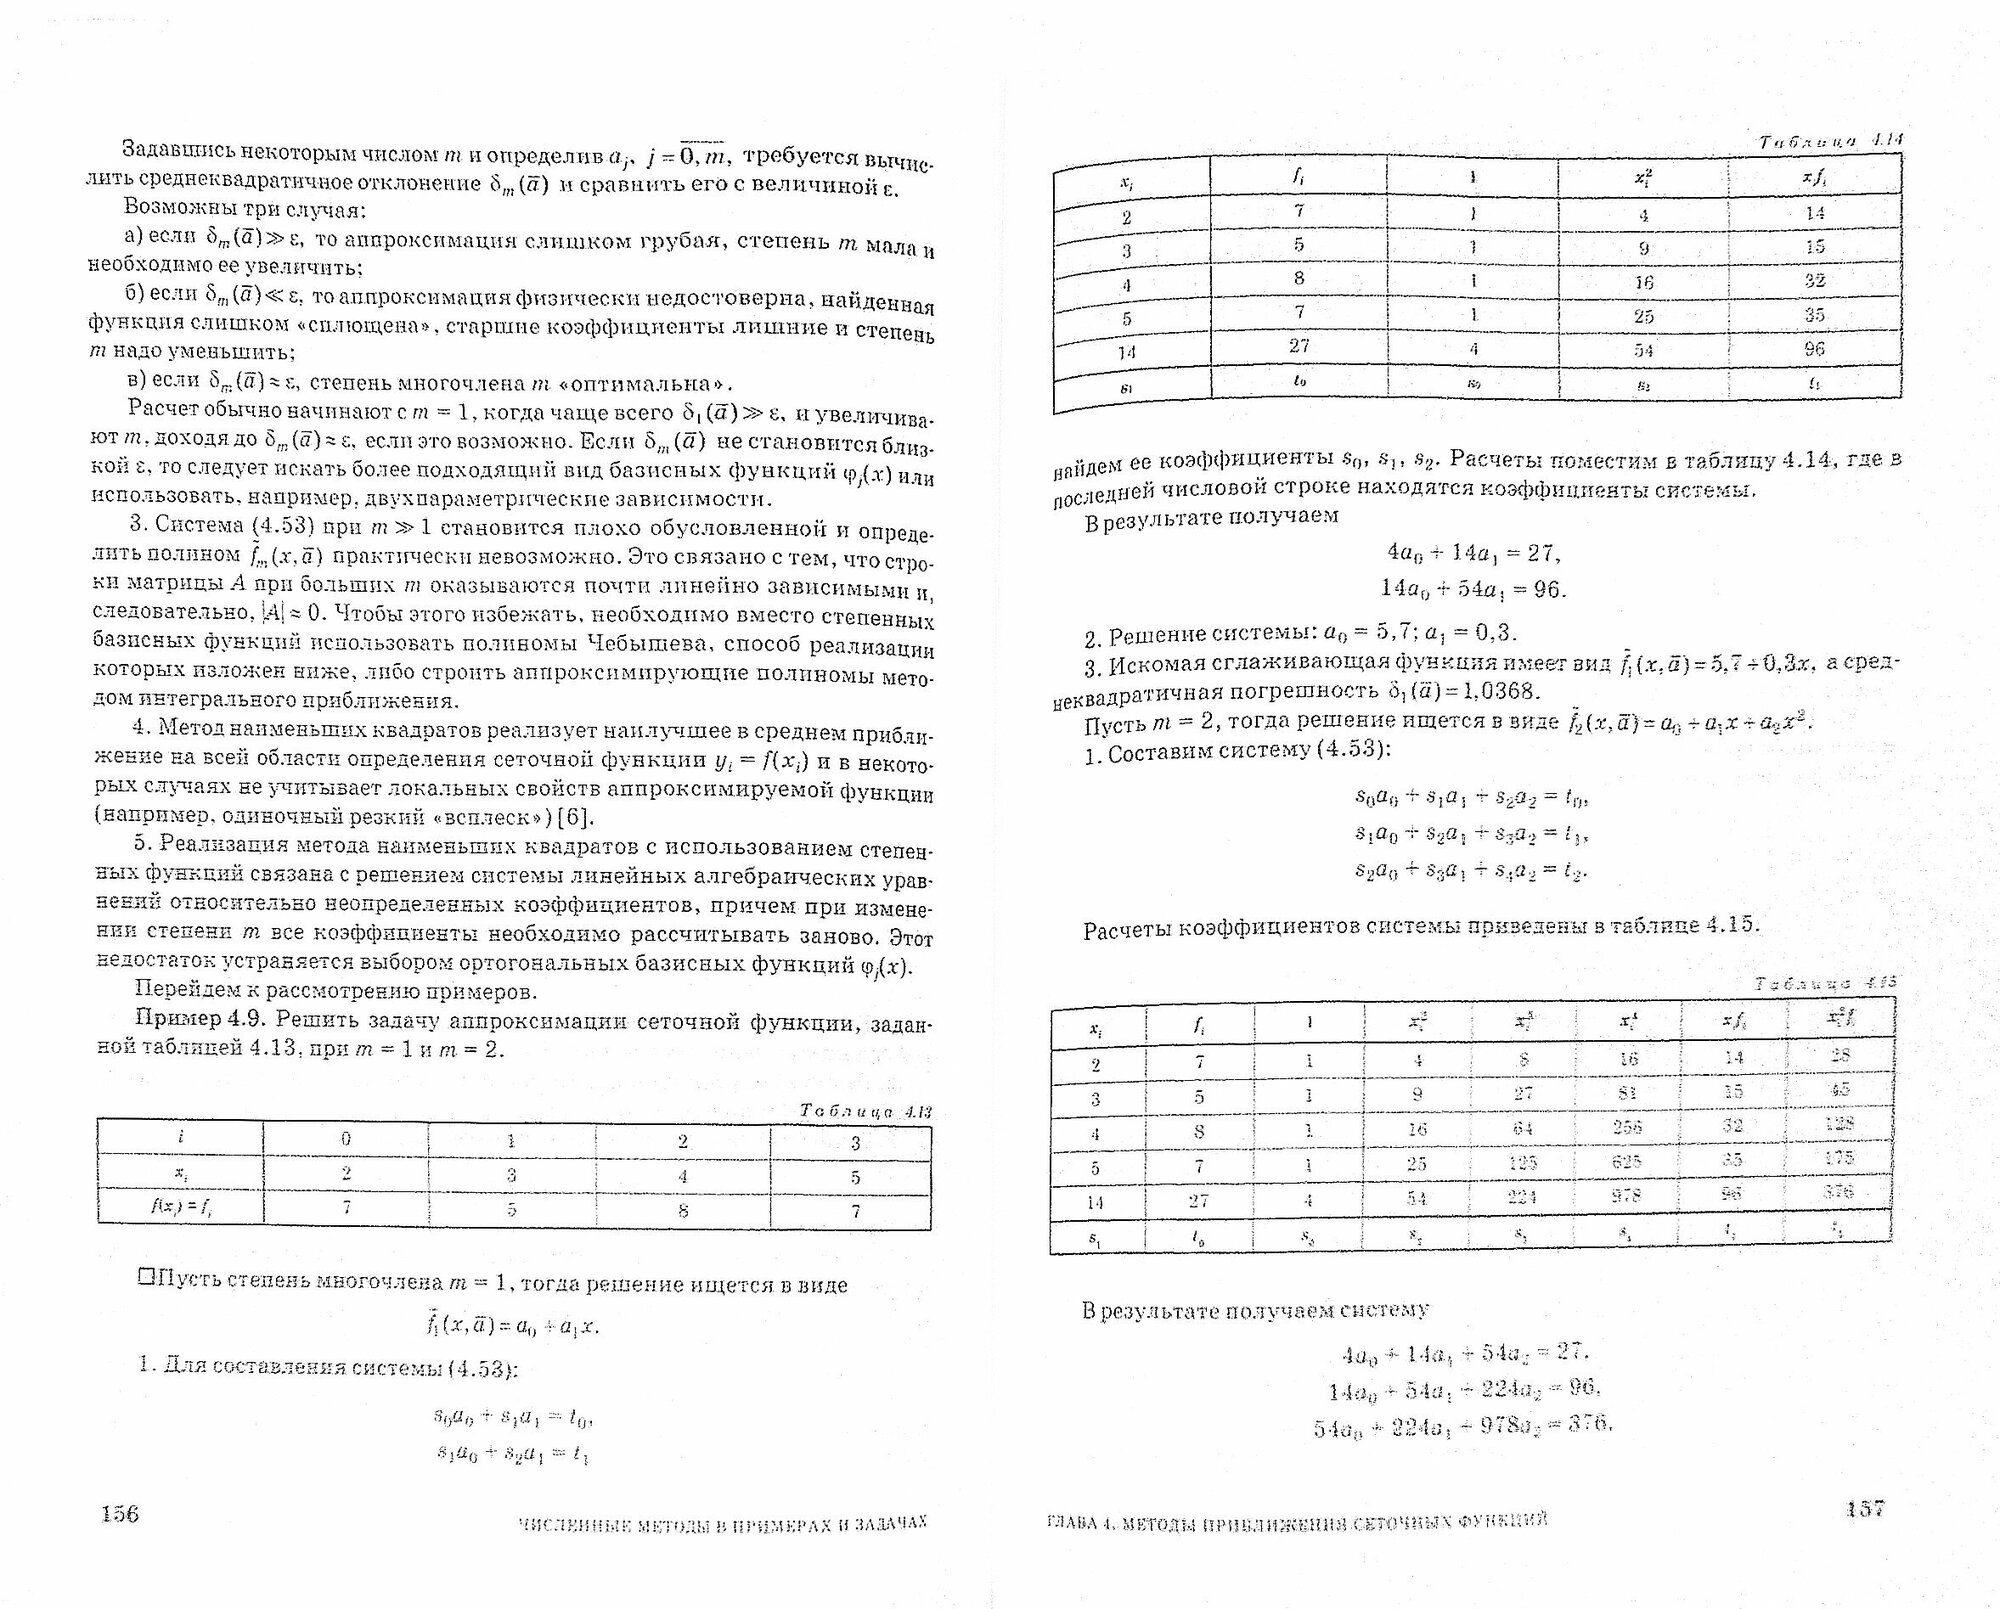 Численные методы в примерах и задачах. Учебное пособие - фото №3